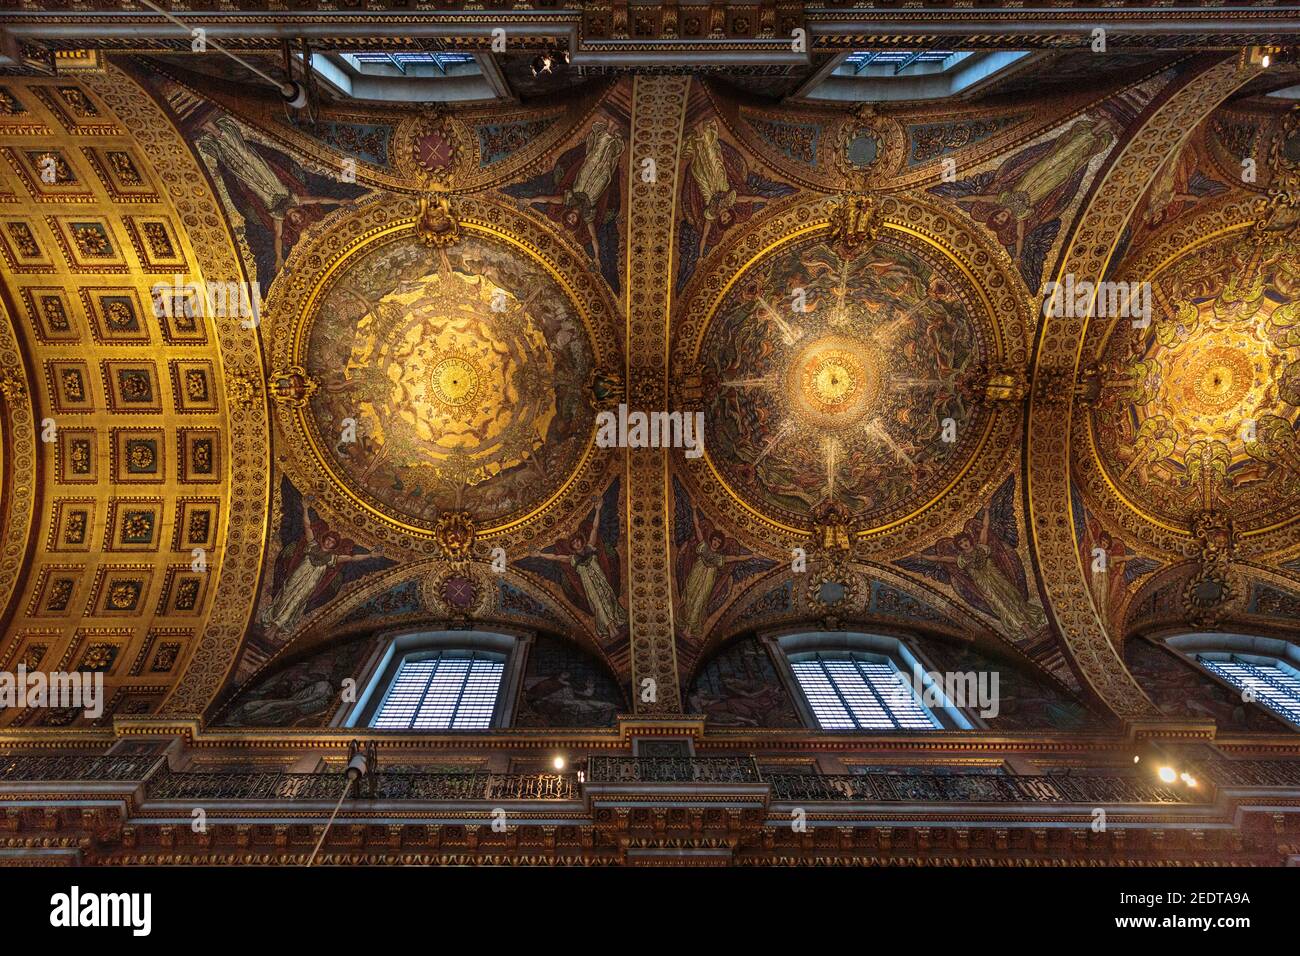 Die Quire Decke, St. Paul's Cathedral Innenraum, Blick bis zu den Wandmalereien, Schnitzereien und vergoldeten Dekorationen, London, England, Großbritannien Stockfoto